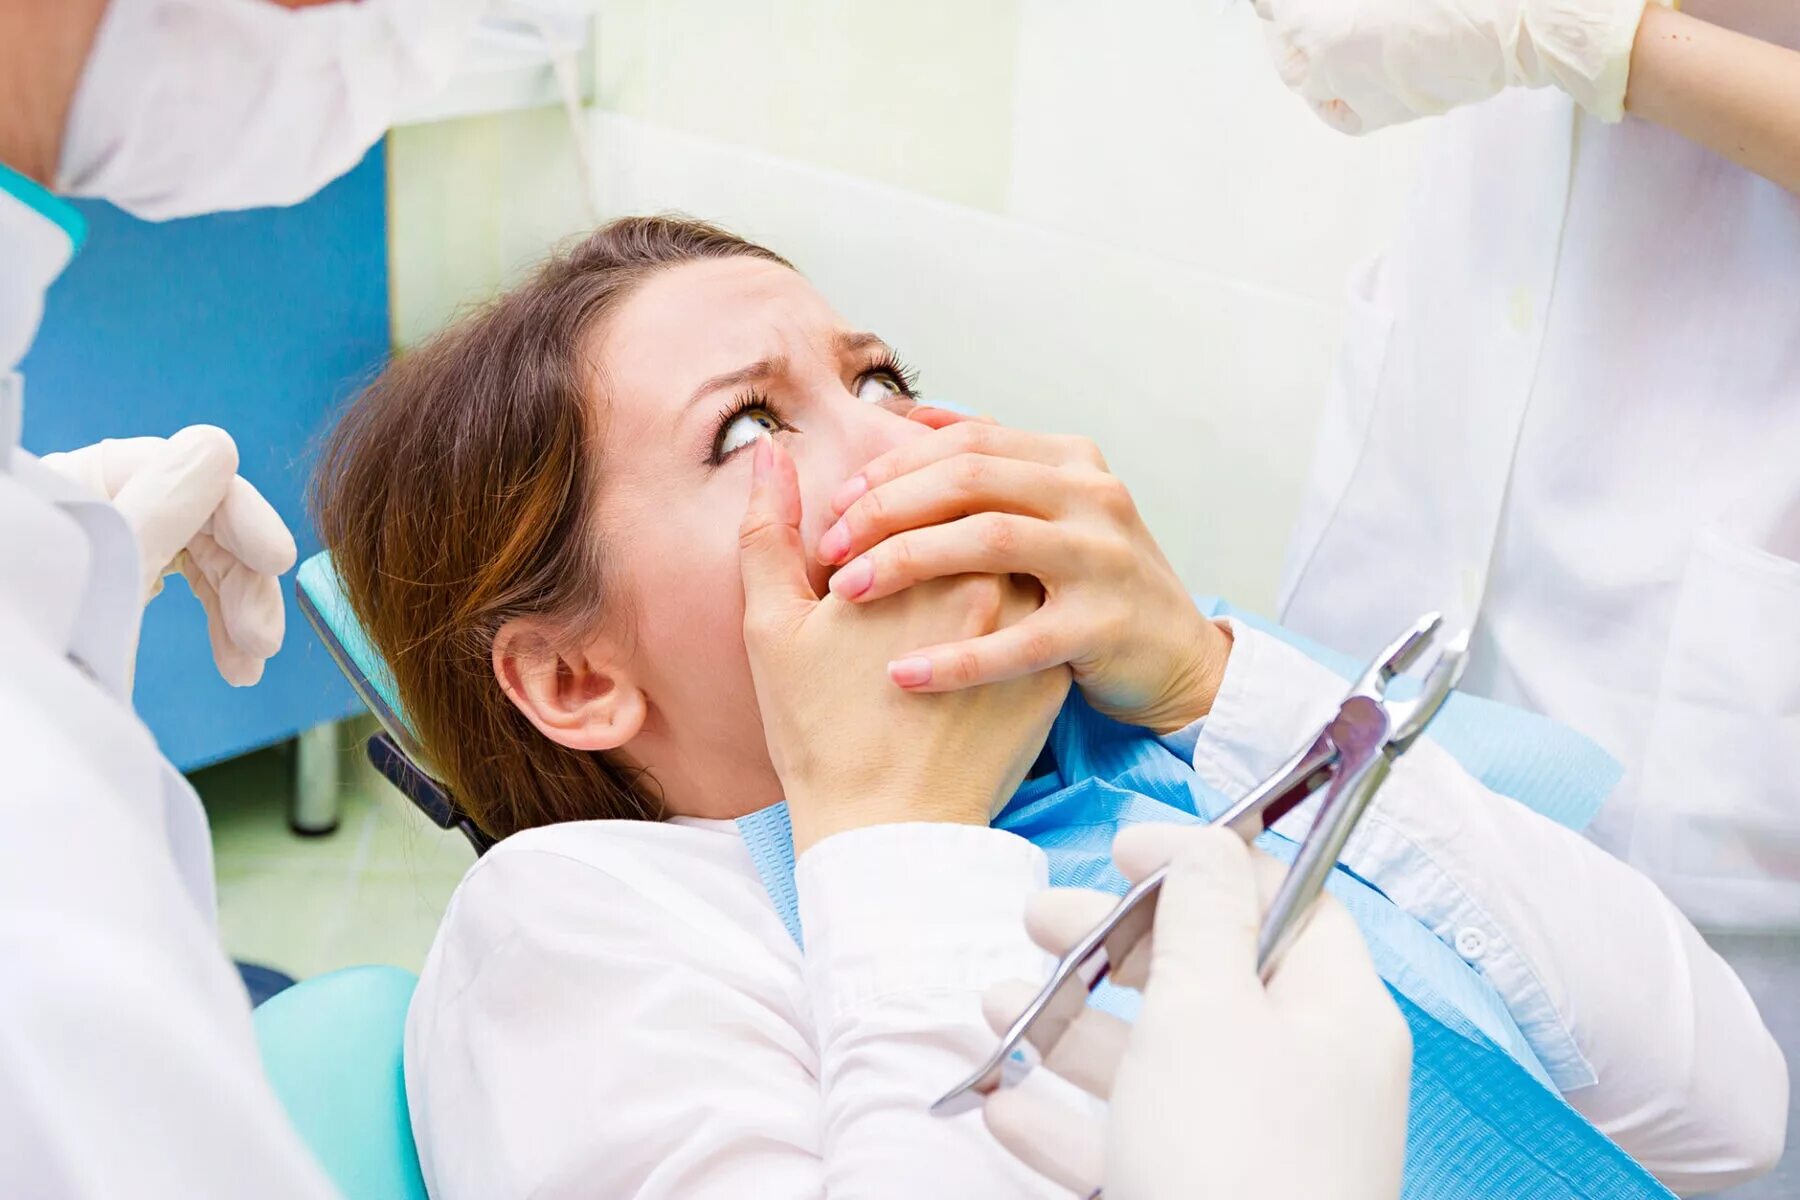 Отзывы после лечения зубов. Стоматолог и пациент. Боязнь стоматологов.